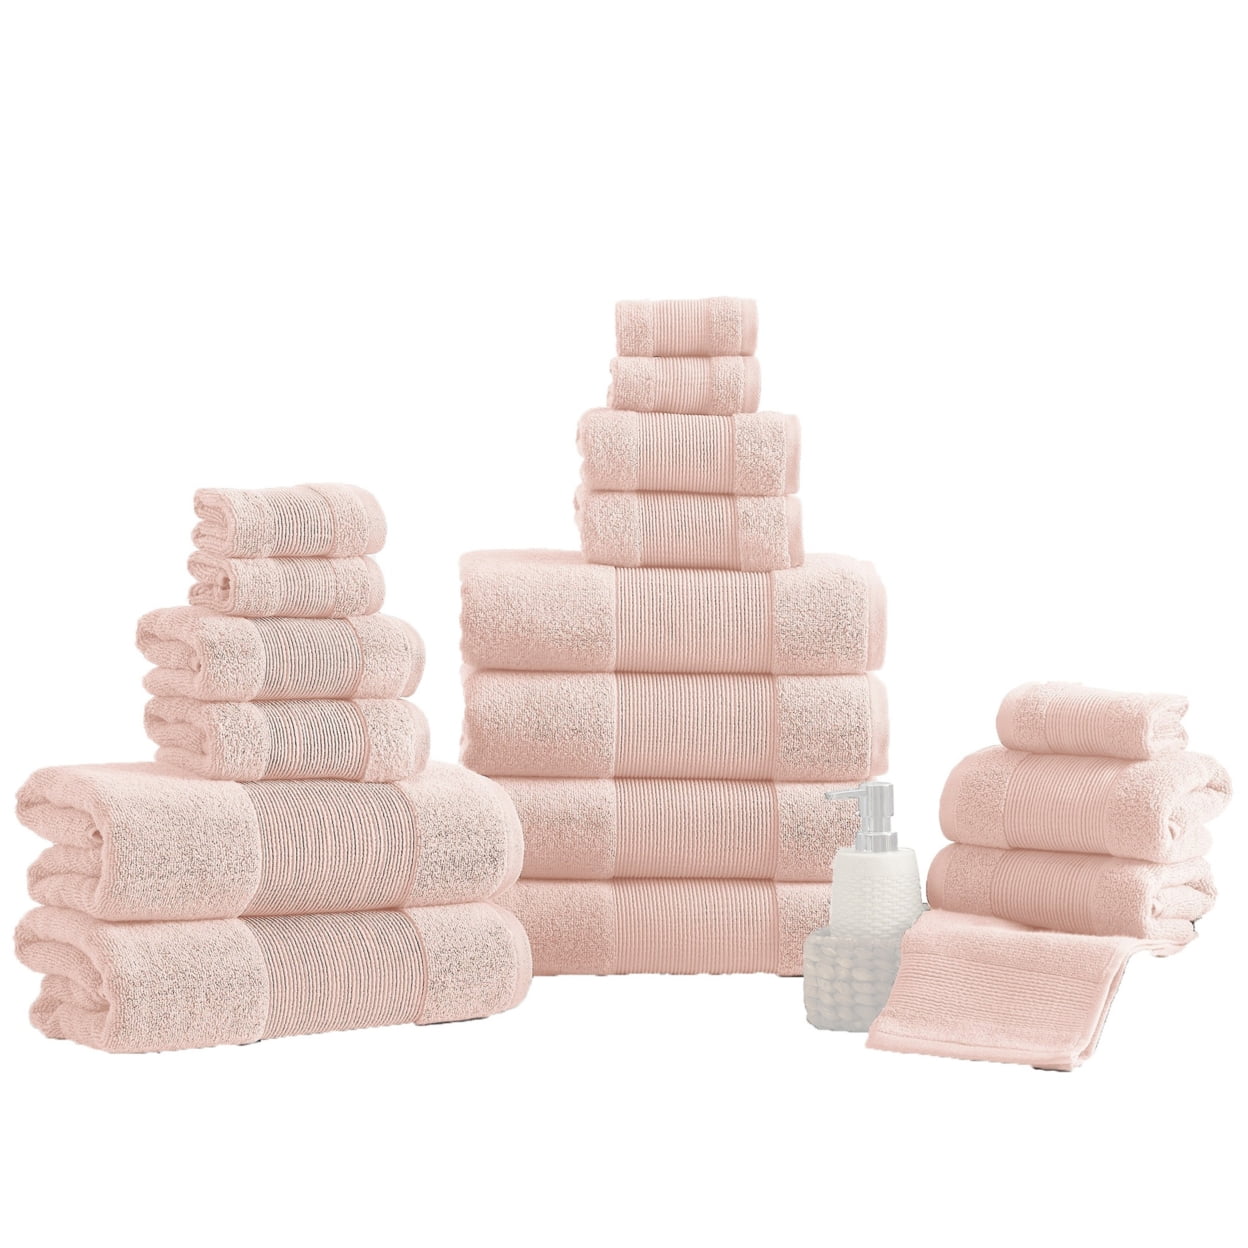 Picture of Benjara BM287464 Lyra Absorbent Textured Cotton Ultra Soft Towel Set, Blush Pink - 18 Piece